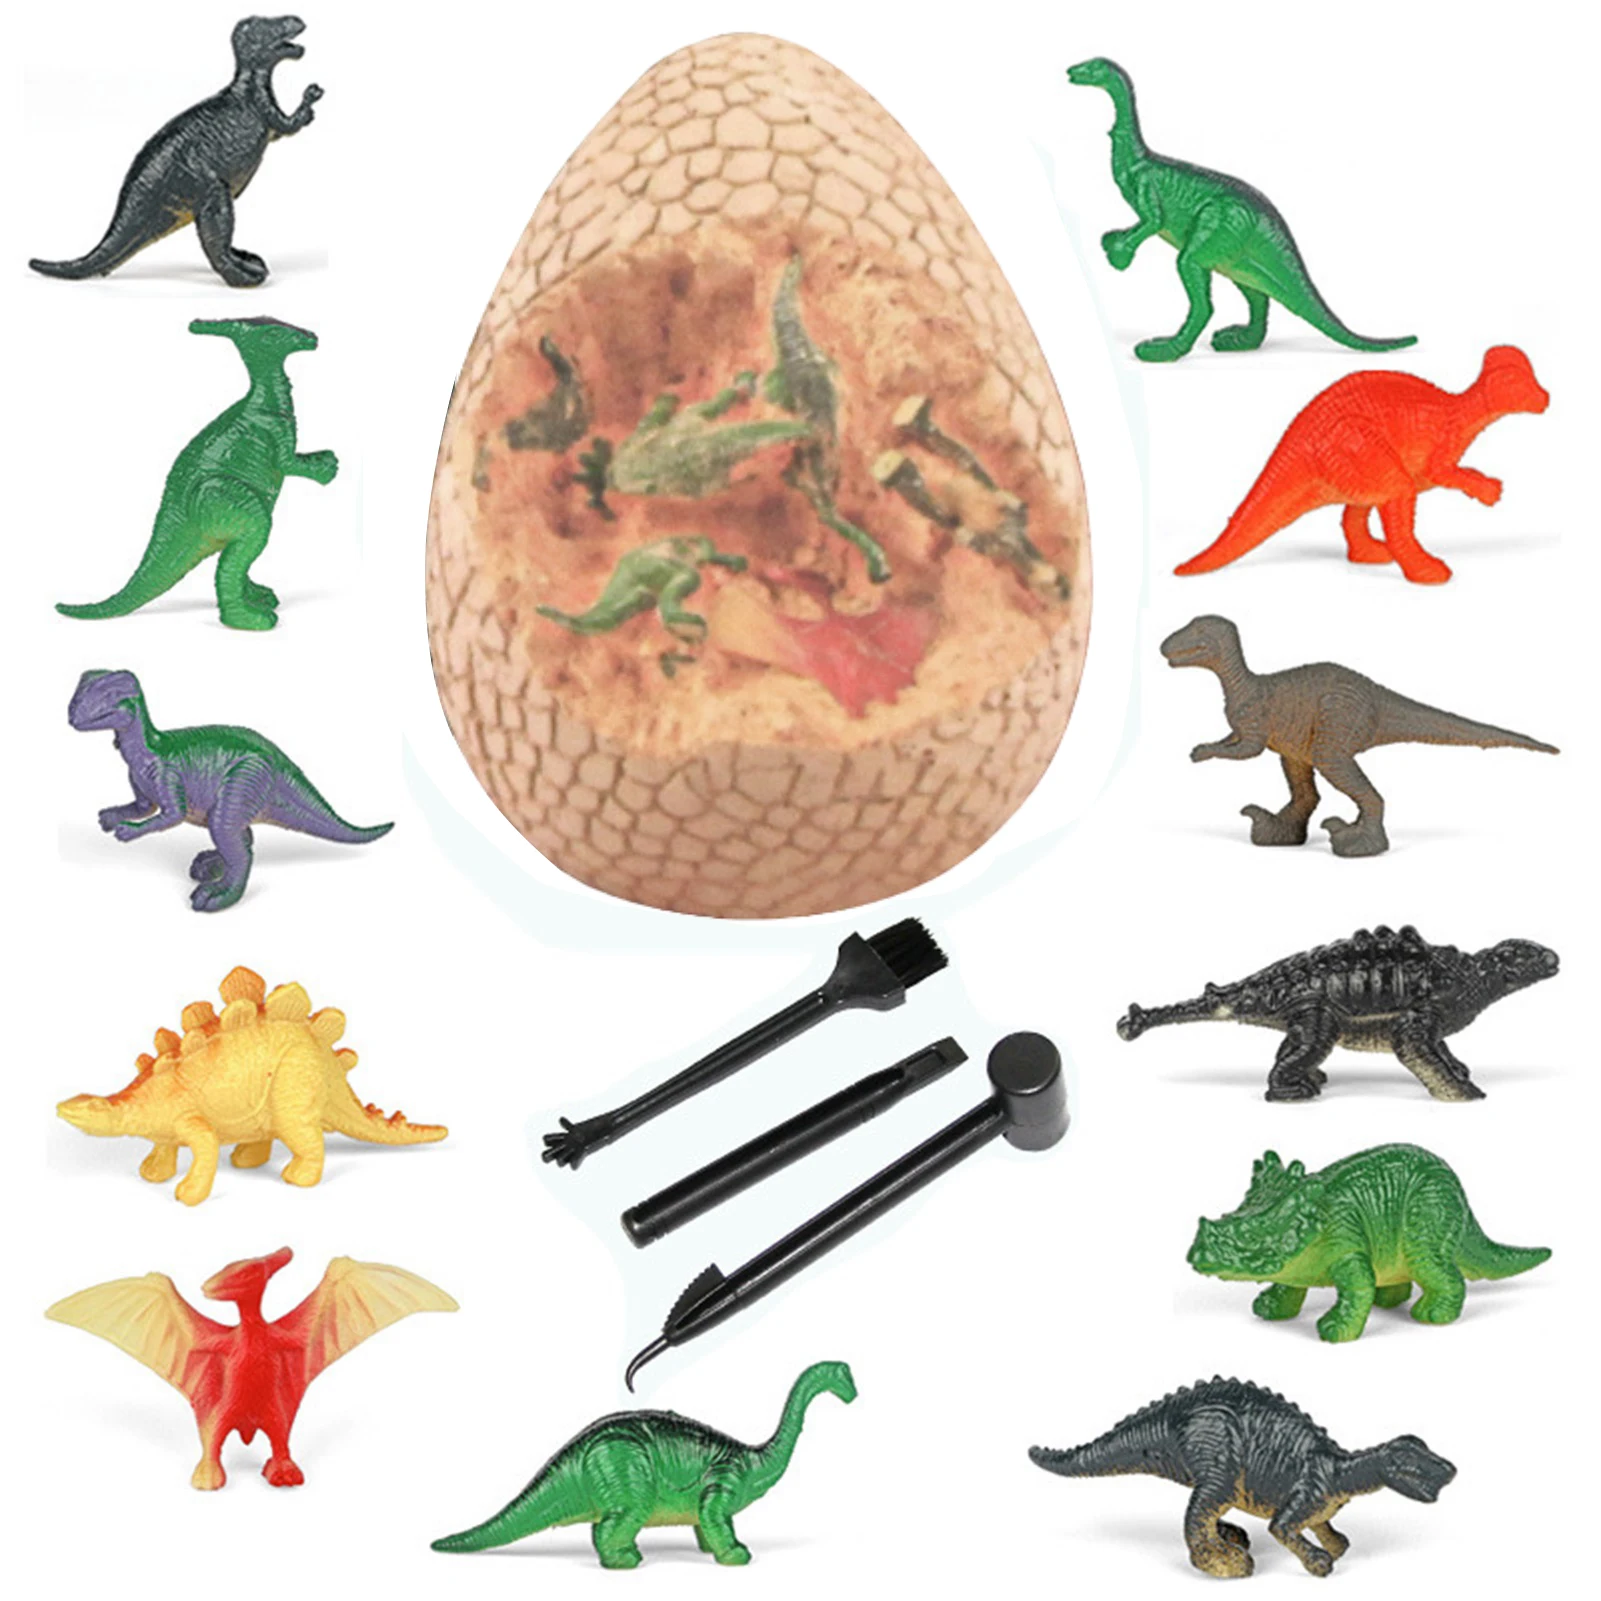 Dino Eggs Dig Kit Easter Egg Dinosaur Toys For Kids Easter Eggs Archaeology Science STEM Gifts For Boys Girls Dino Eggs